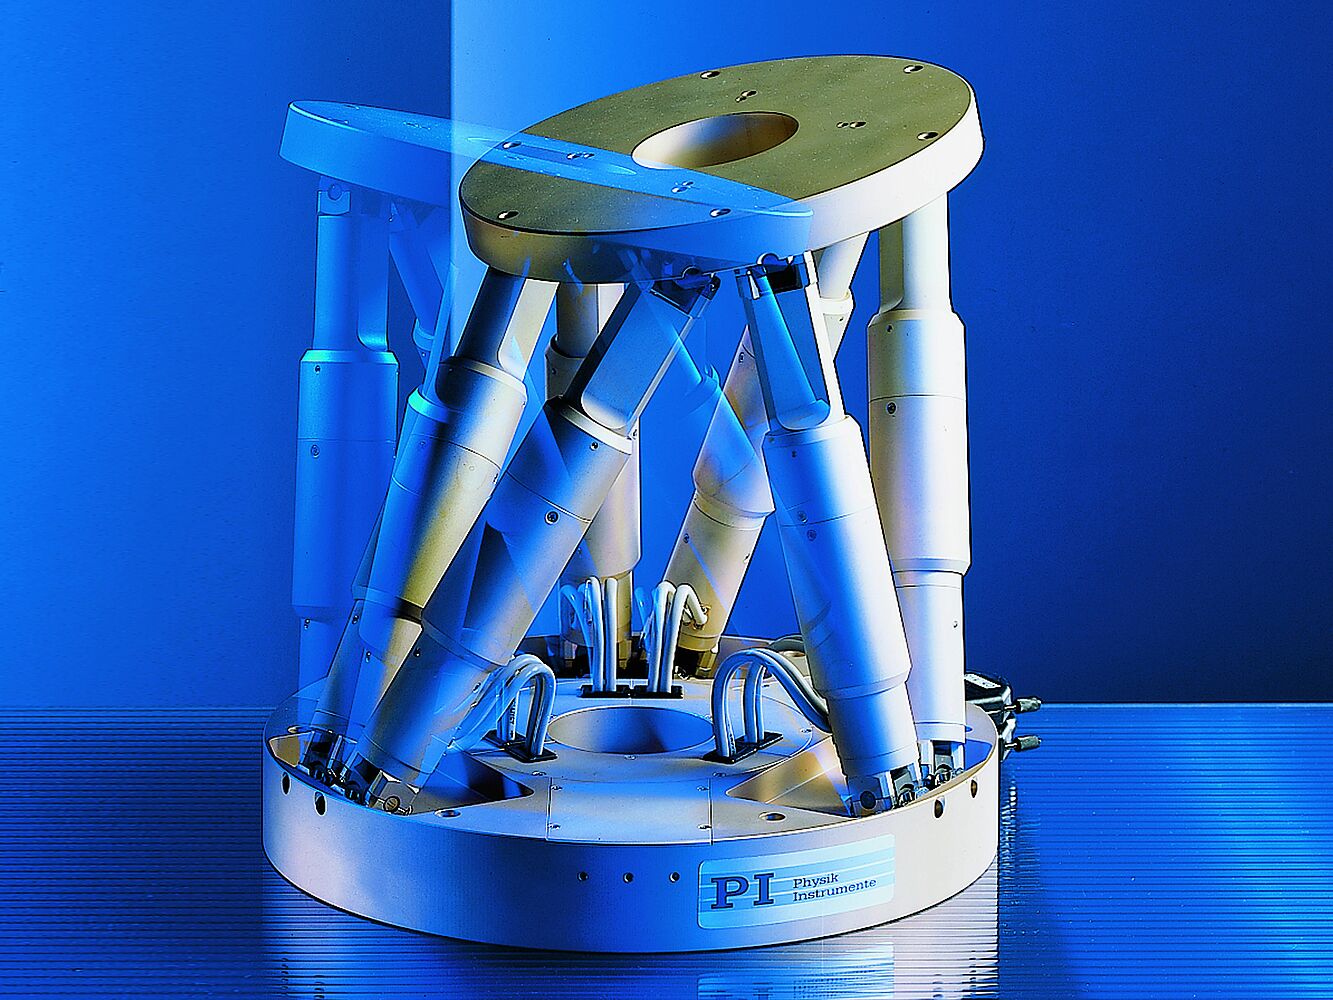 Moteurs cc en robotique Hexapod micro-positionnement avec un maximum de maniabilité et de précision